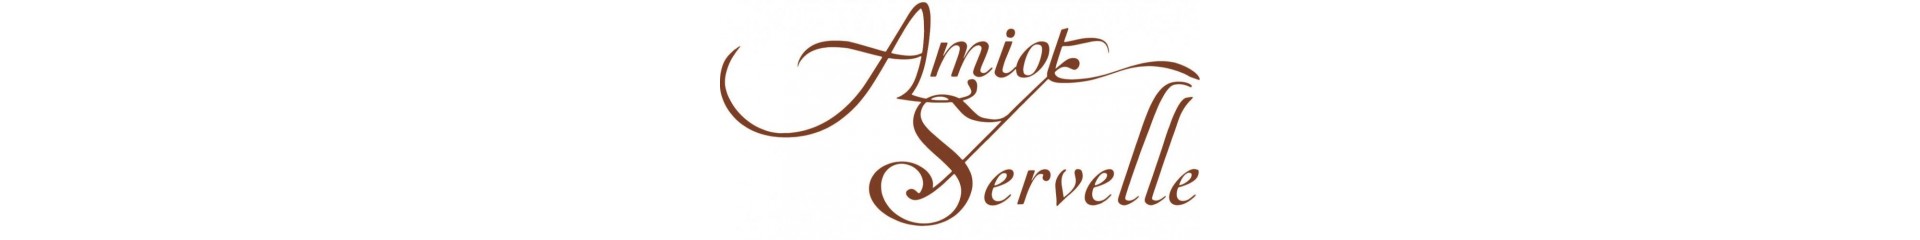 Amiot-Servelle